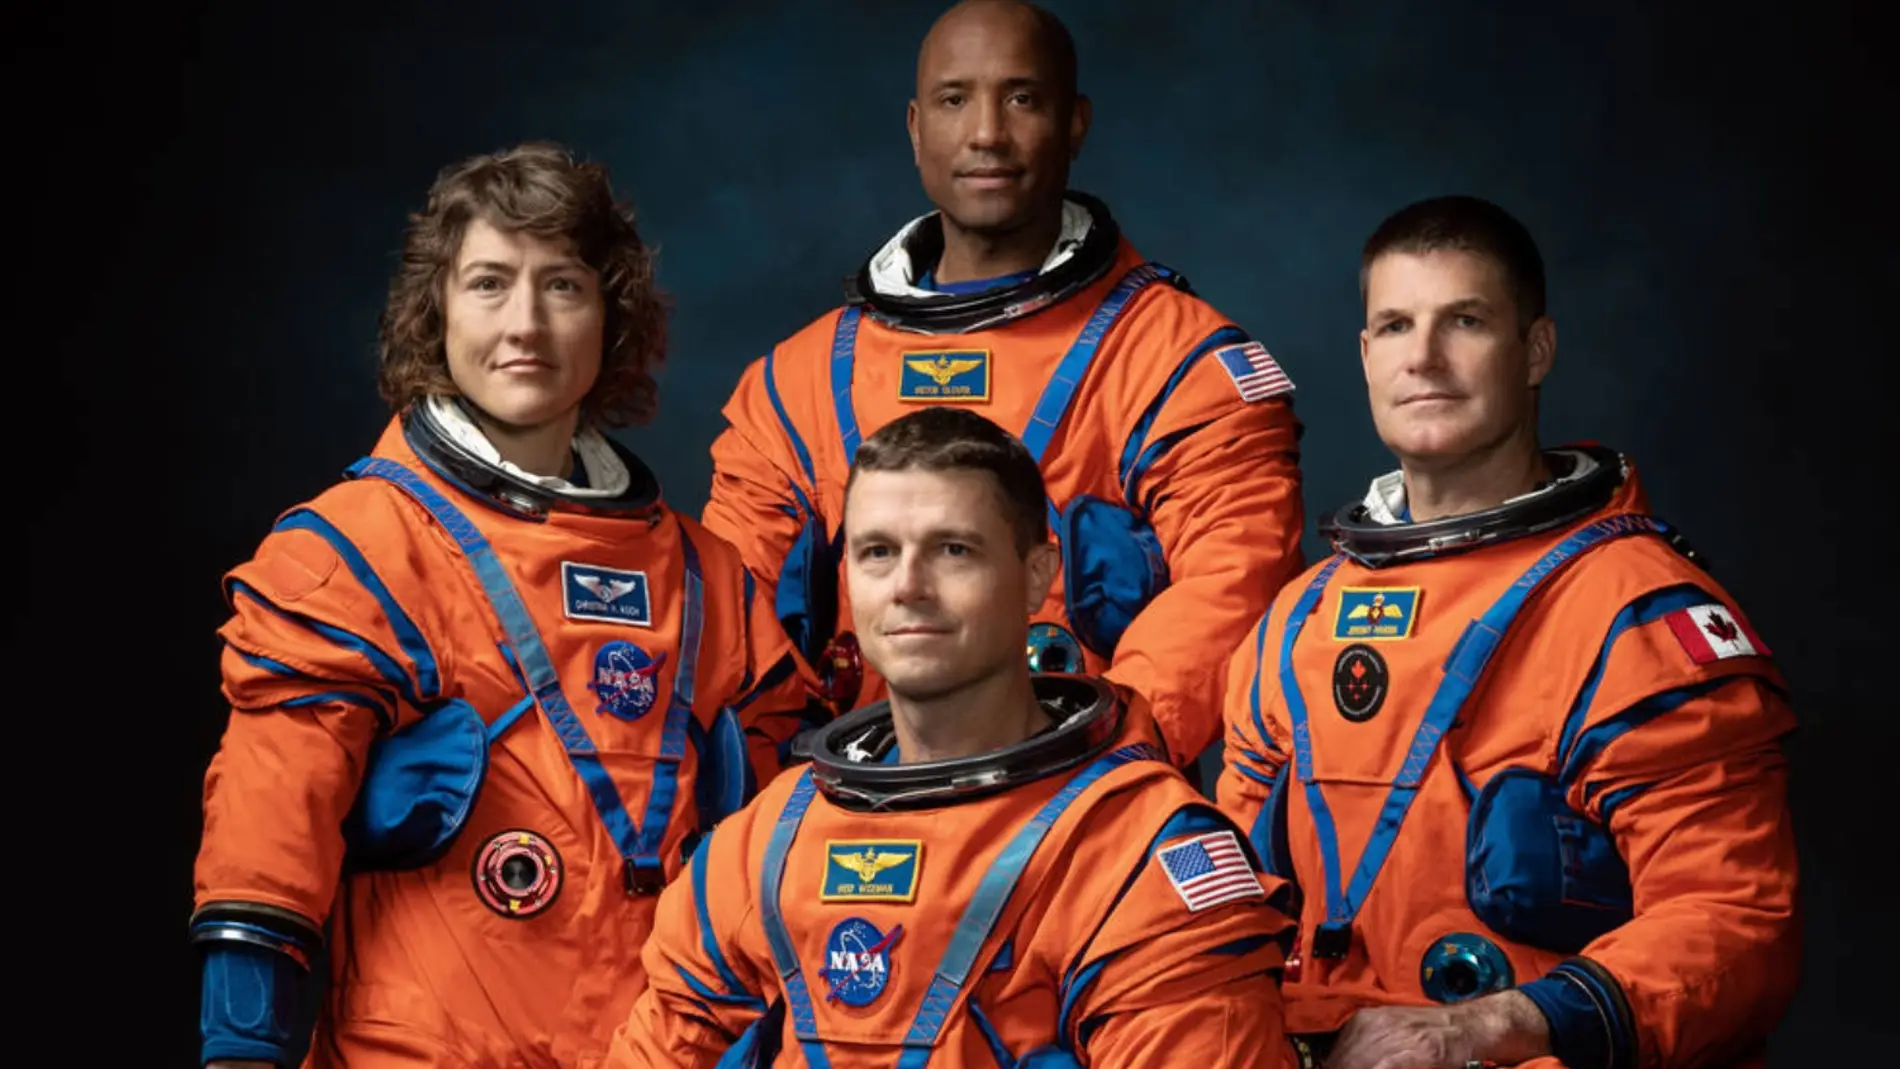 Estos son los astronautas que viajaran a la Luna por primera vez desde la mision Apolo